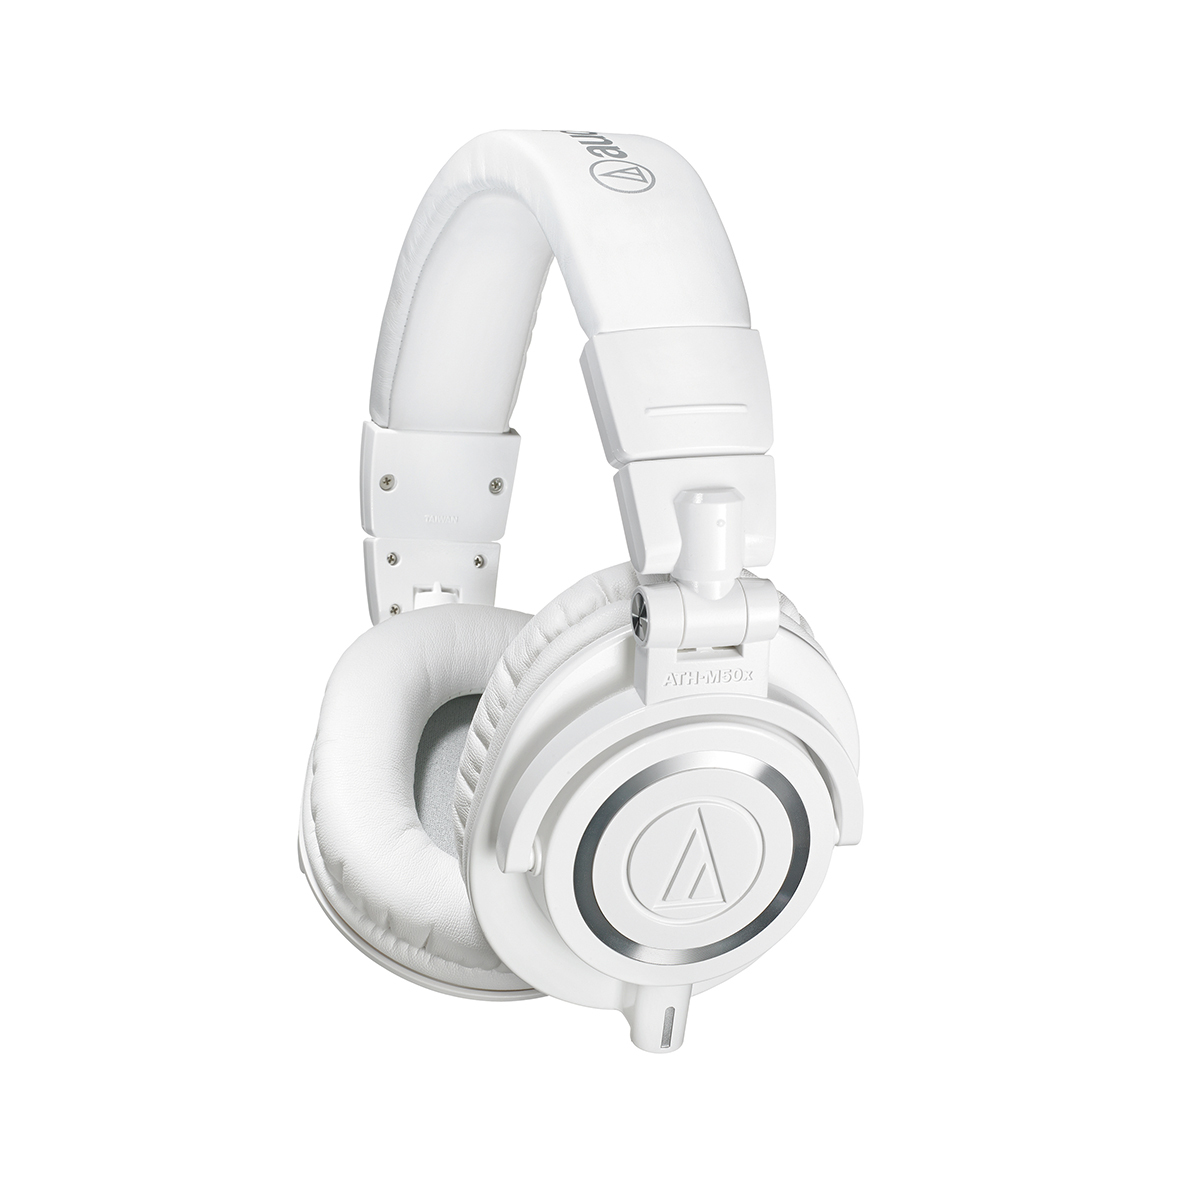 Картинка Наушники Audio-Technica ATH-M50X White - лучшая цена, доставка по России